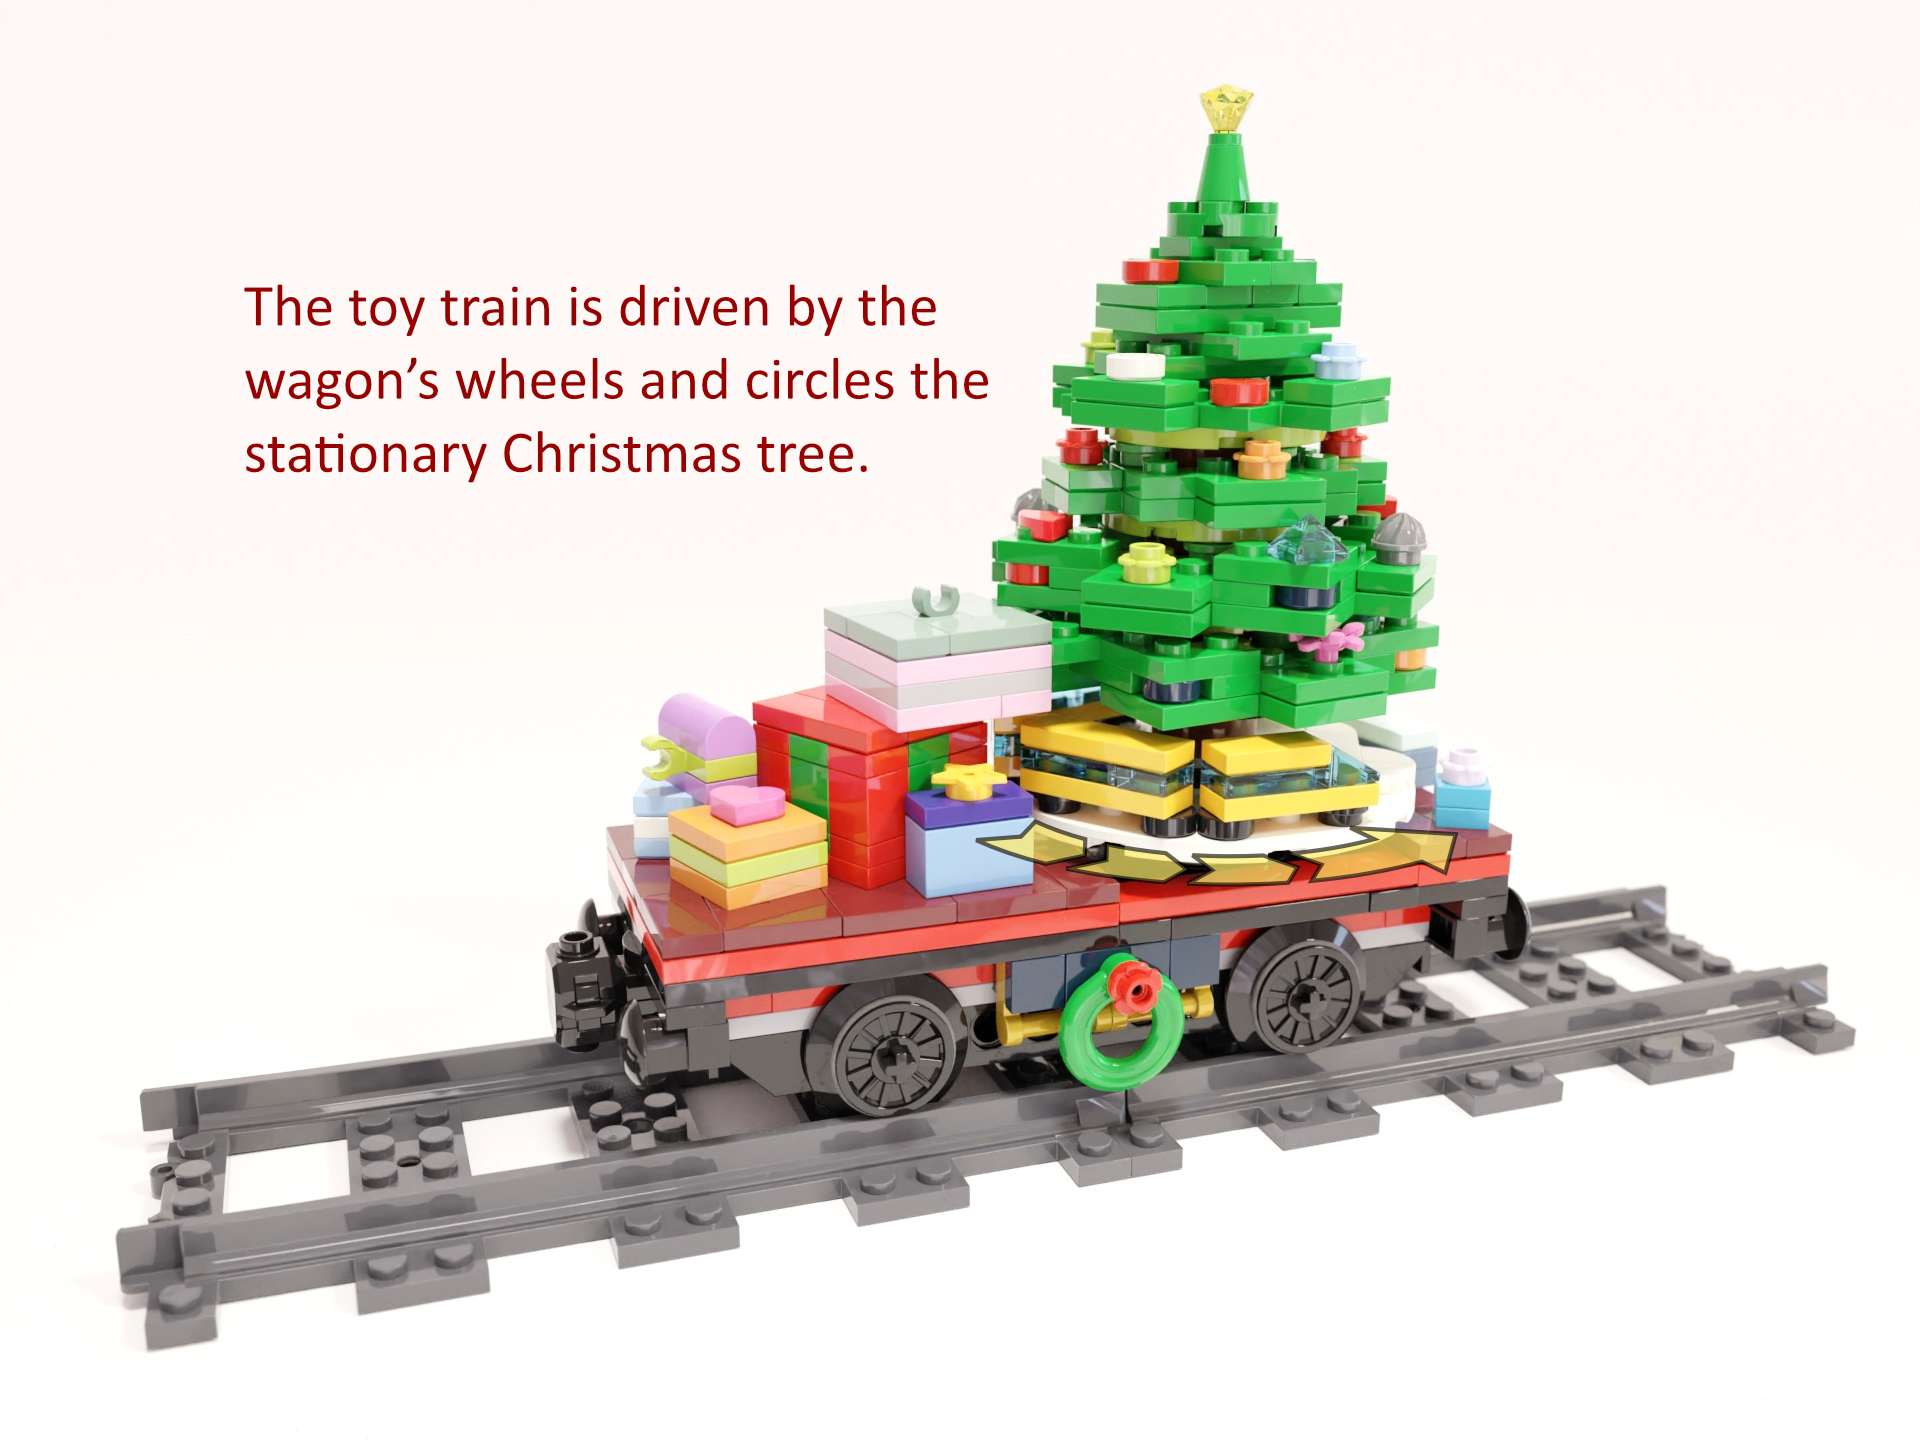 Bild 3: Der Spielzeugzug wird von den Rädern des Wagens angetrieben und fährt um den stationären Weihnachtsbaum herum